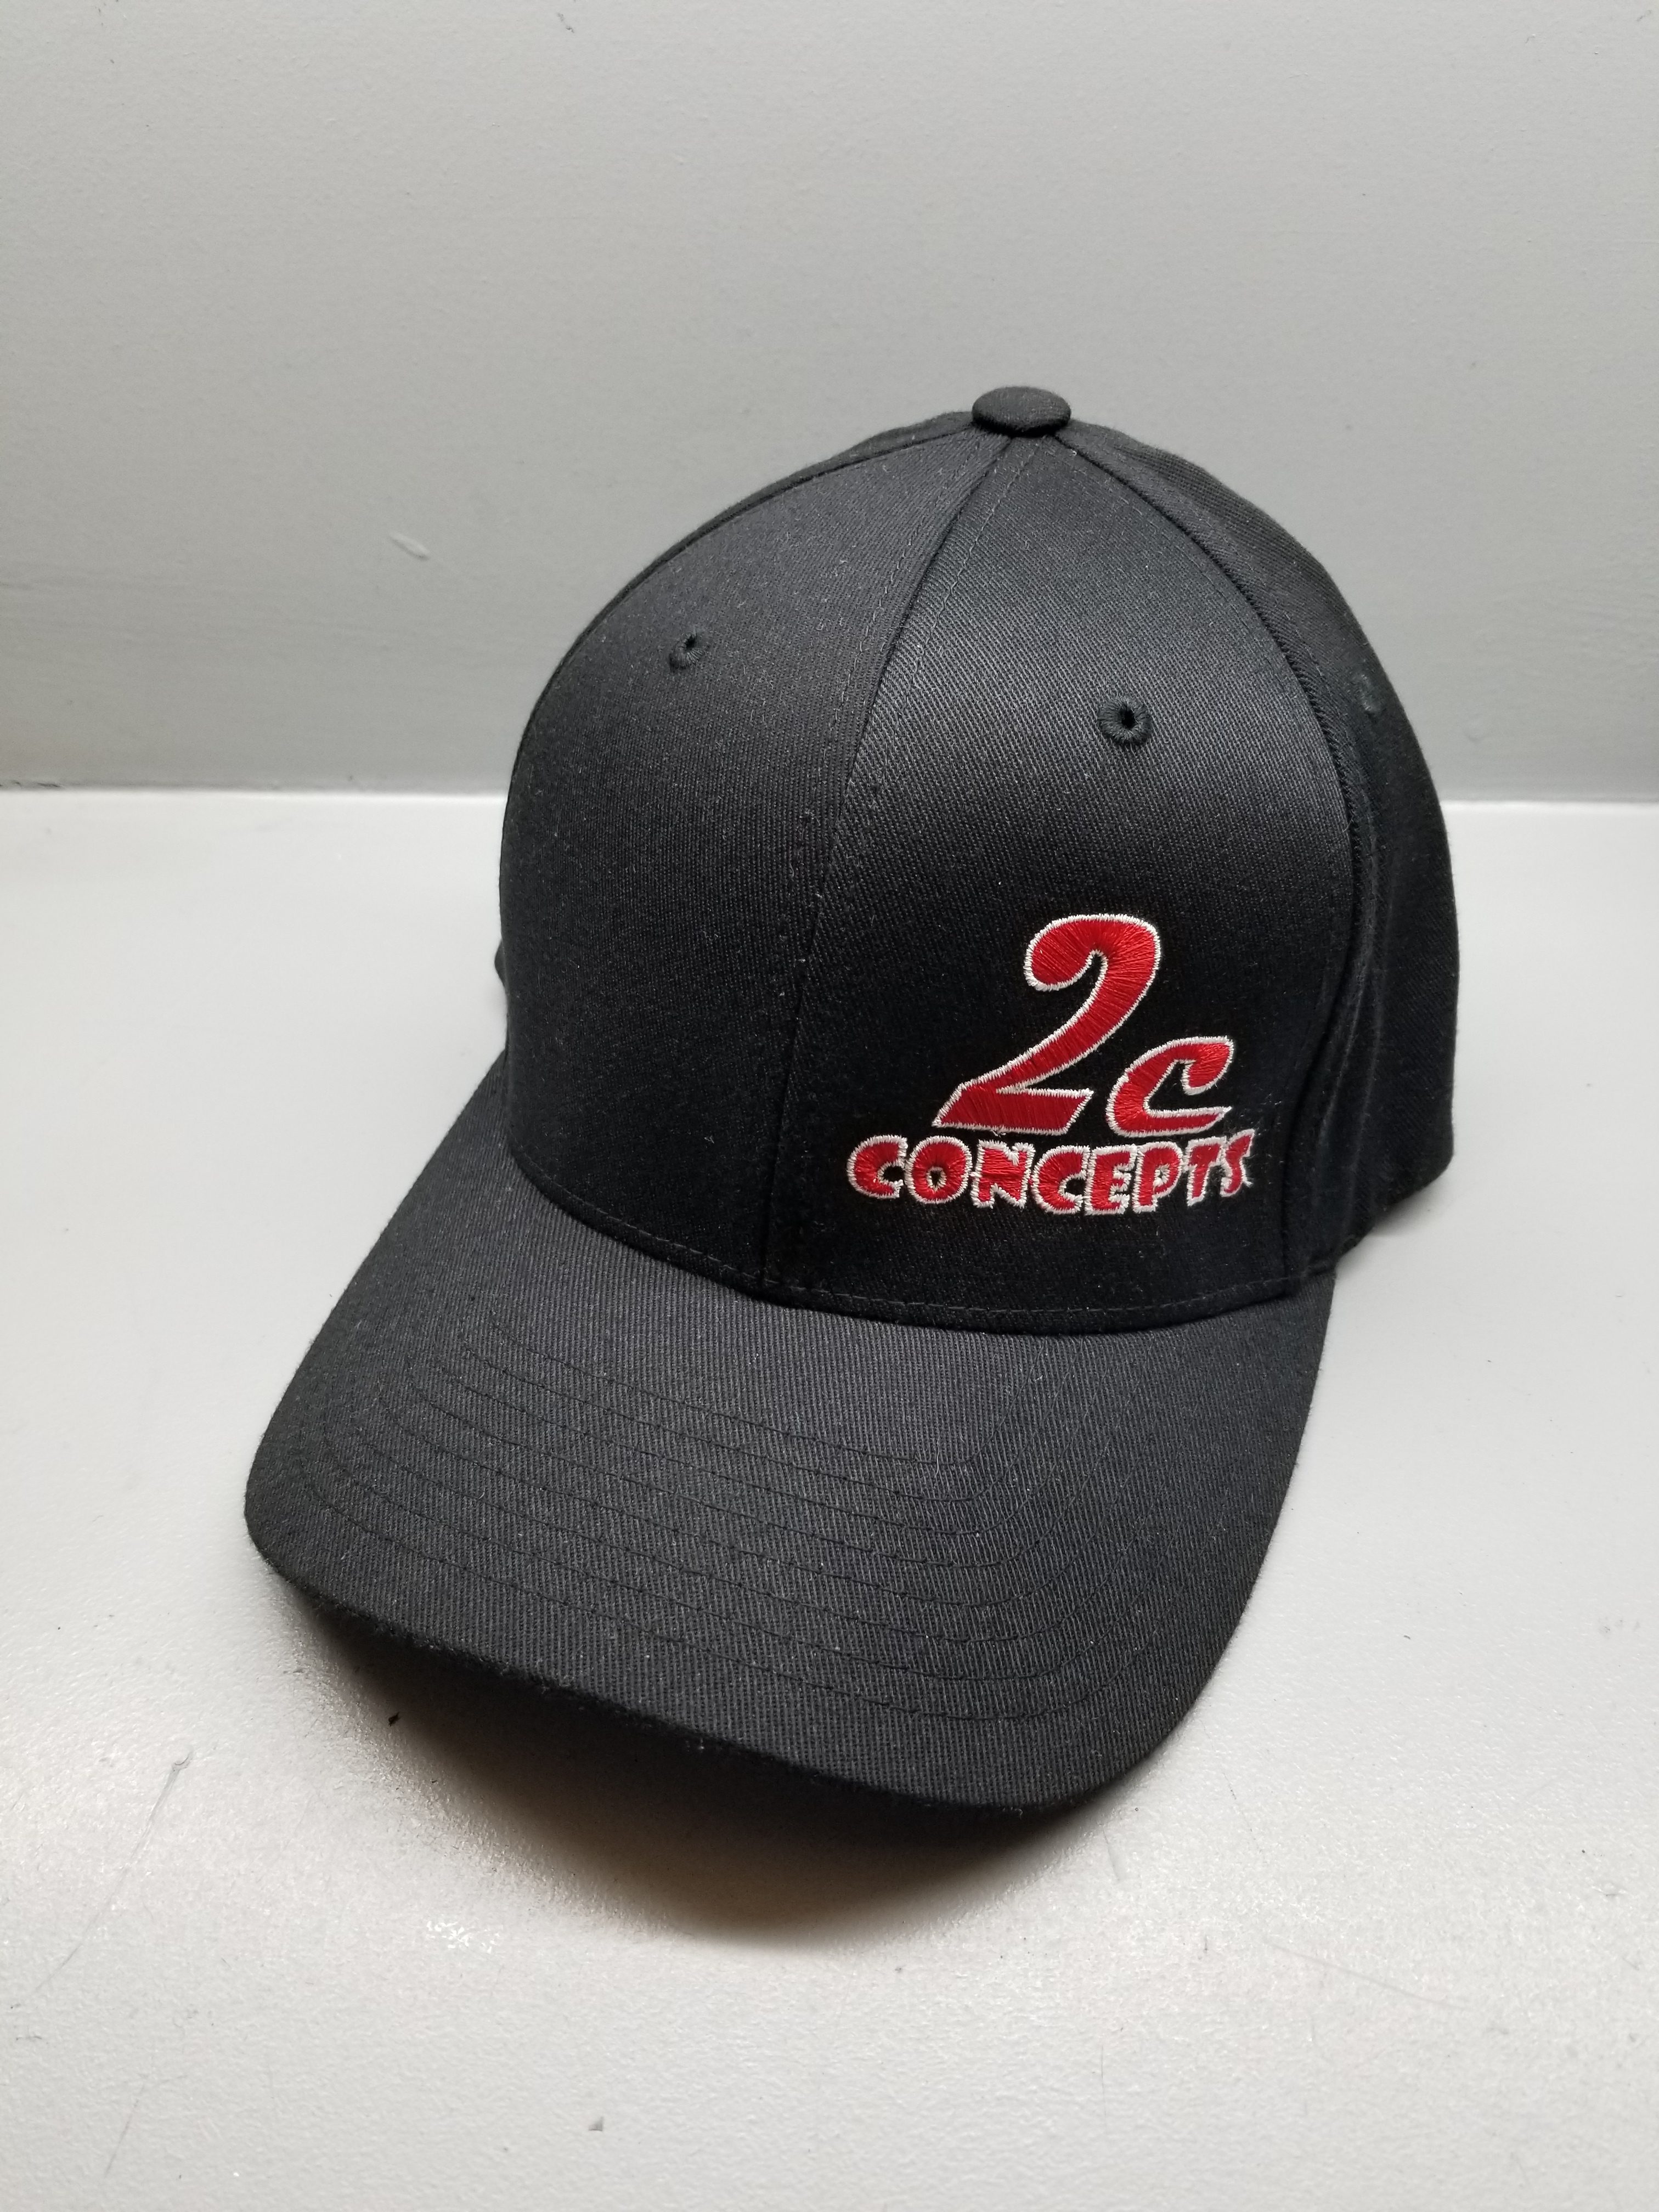 2C CONCEPTS HAT XL – 2c Concepts